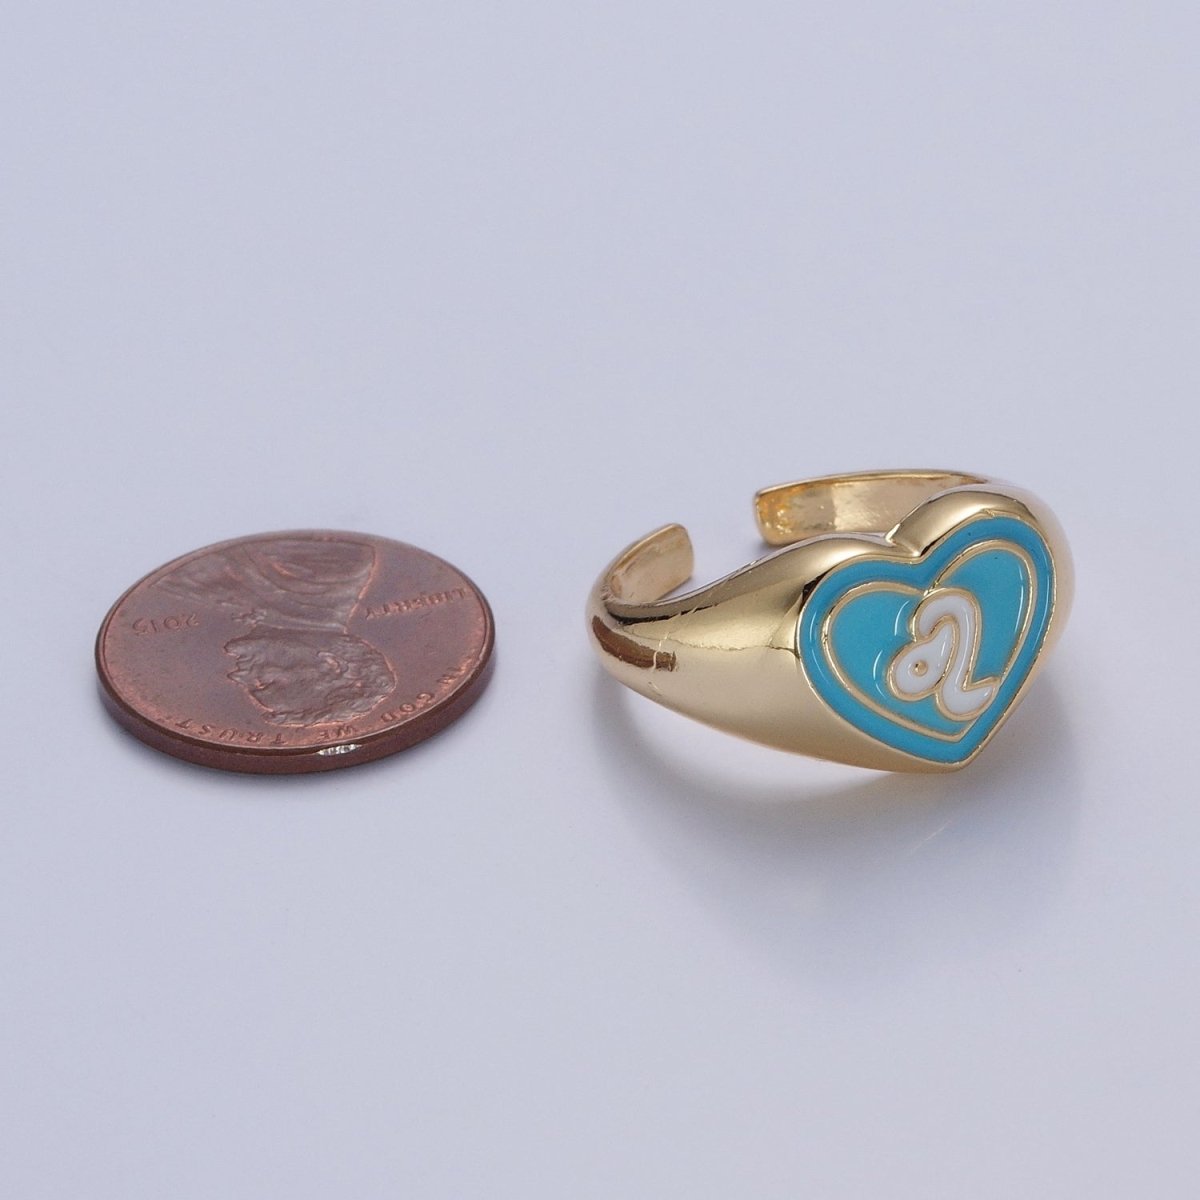 Blue Heart Signet Adjustable Ring White Snake Ring O-2231 - DLUXCA